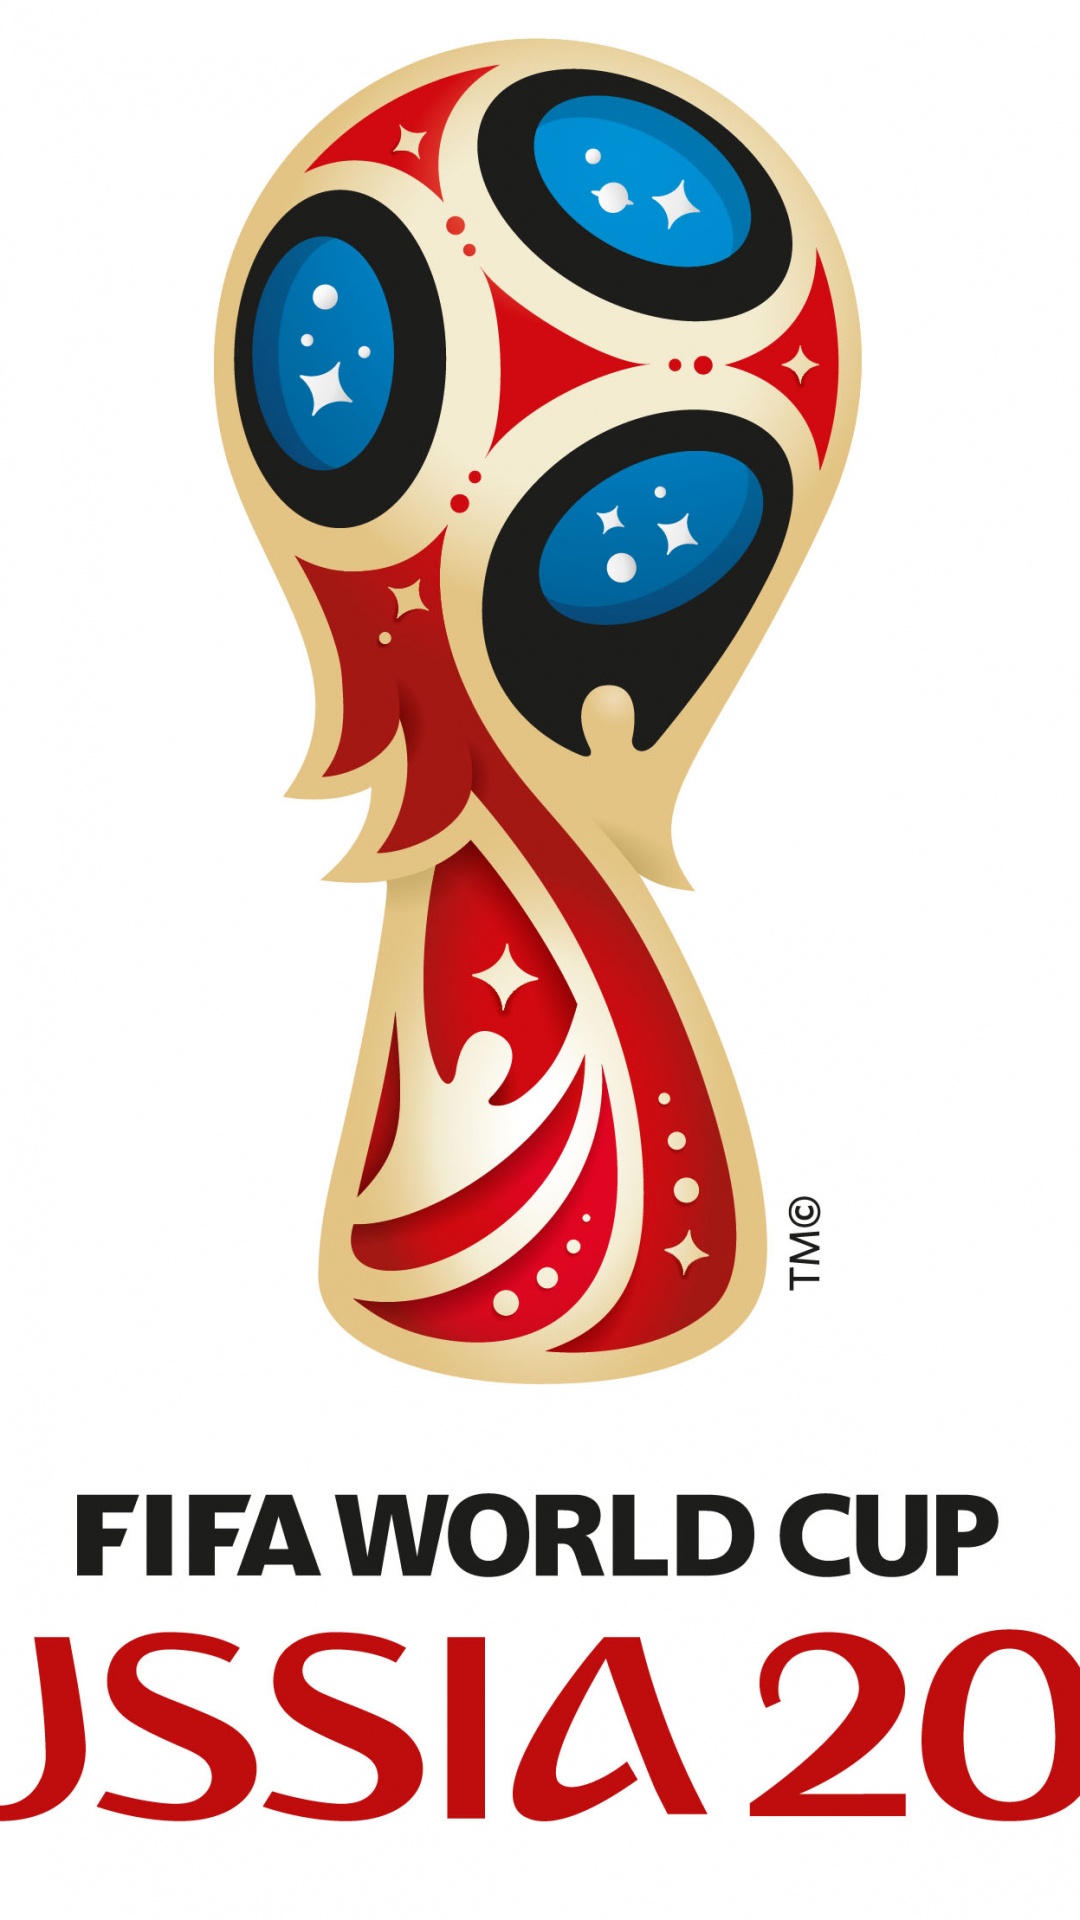 2018年世界杯, 国际足联, 品牌, 俄罗斯 壁纸 1080x1920 允许